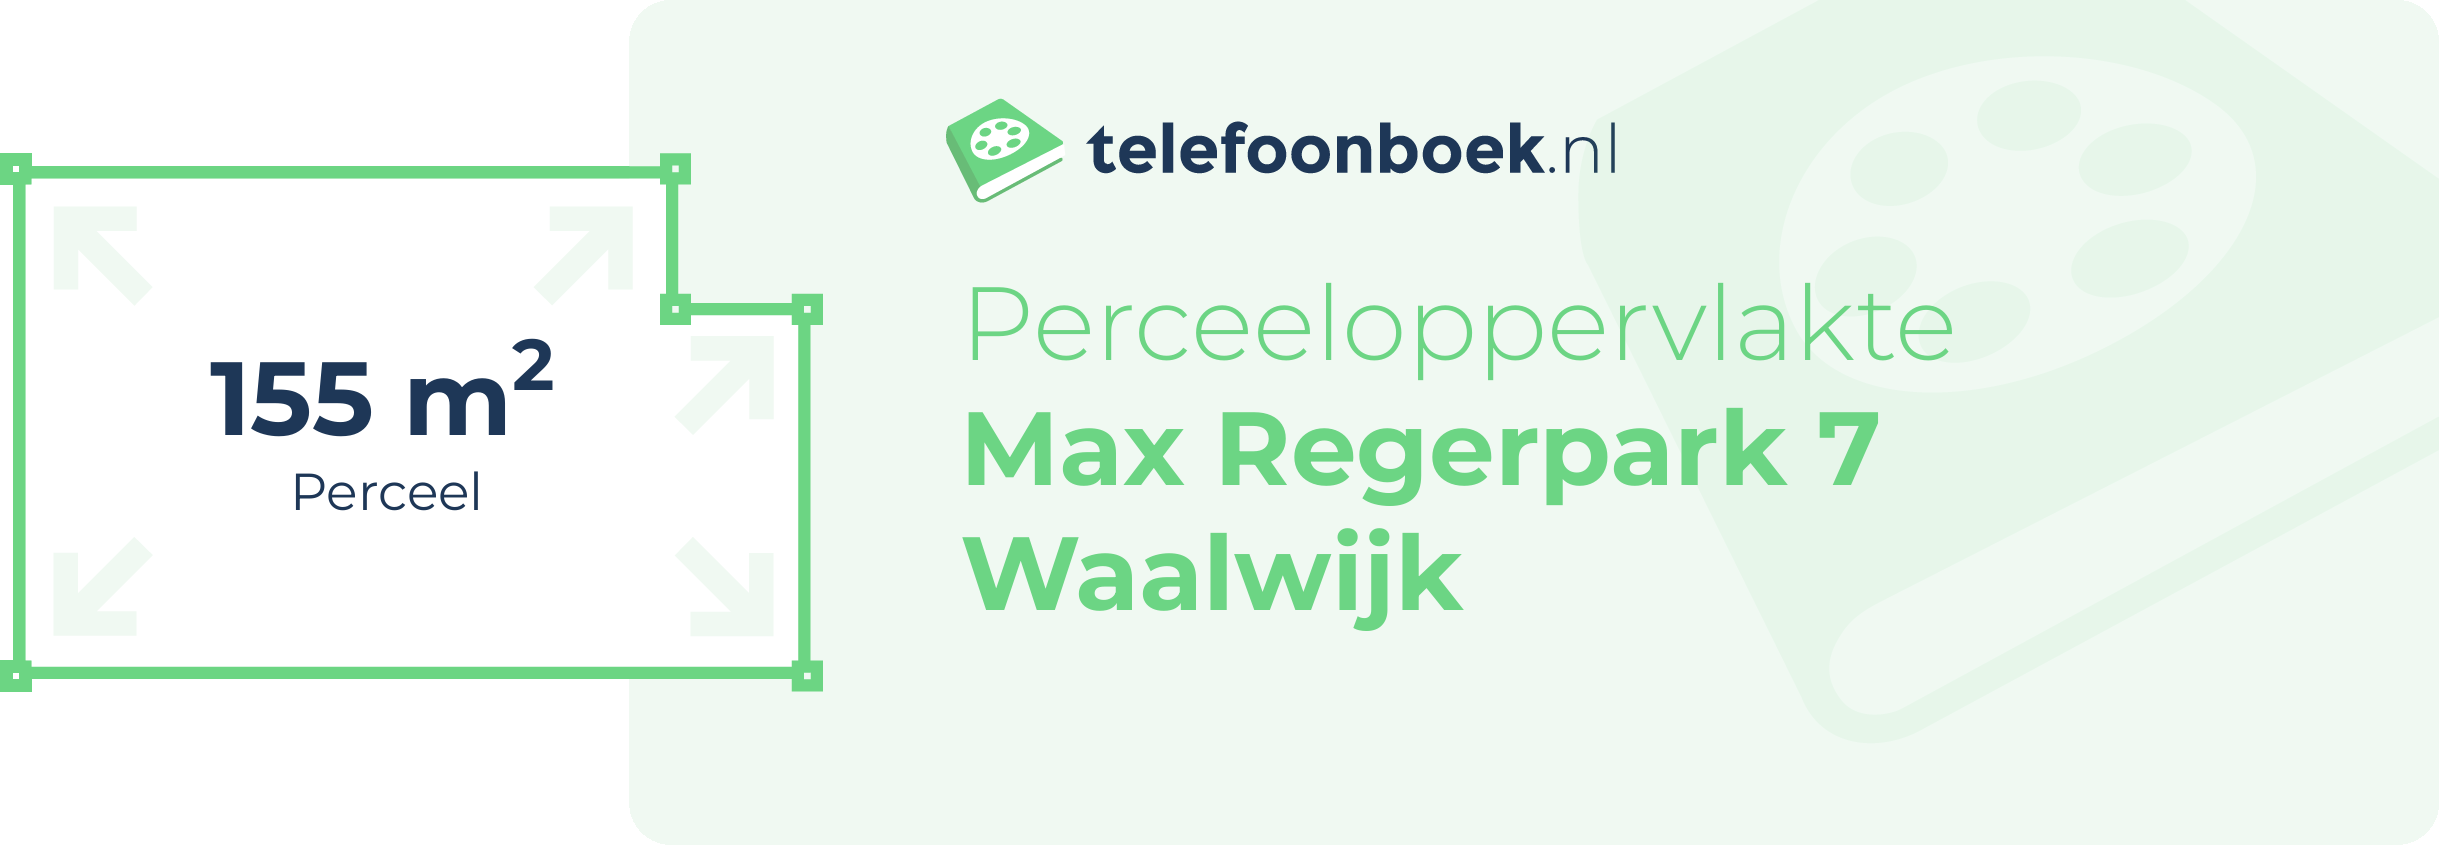 Perceeloppervlakte Max Regerpark 7 Waalwijk